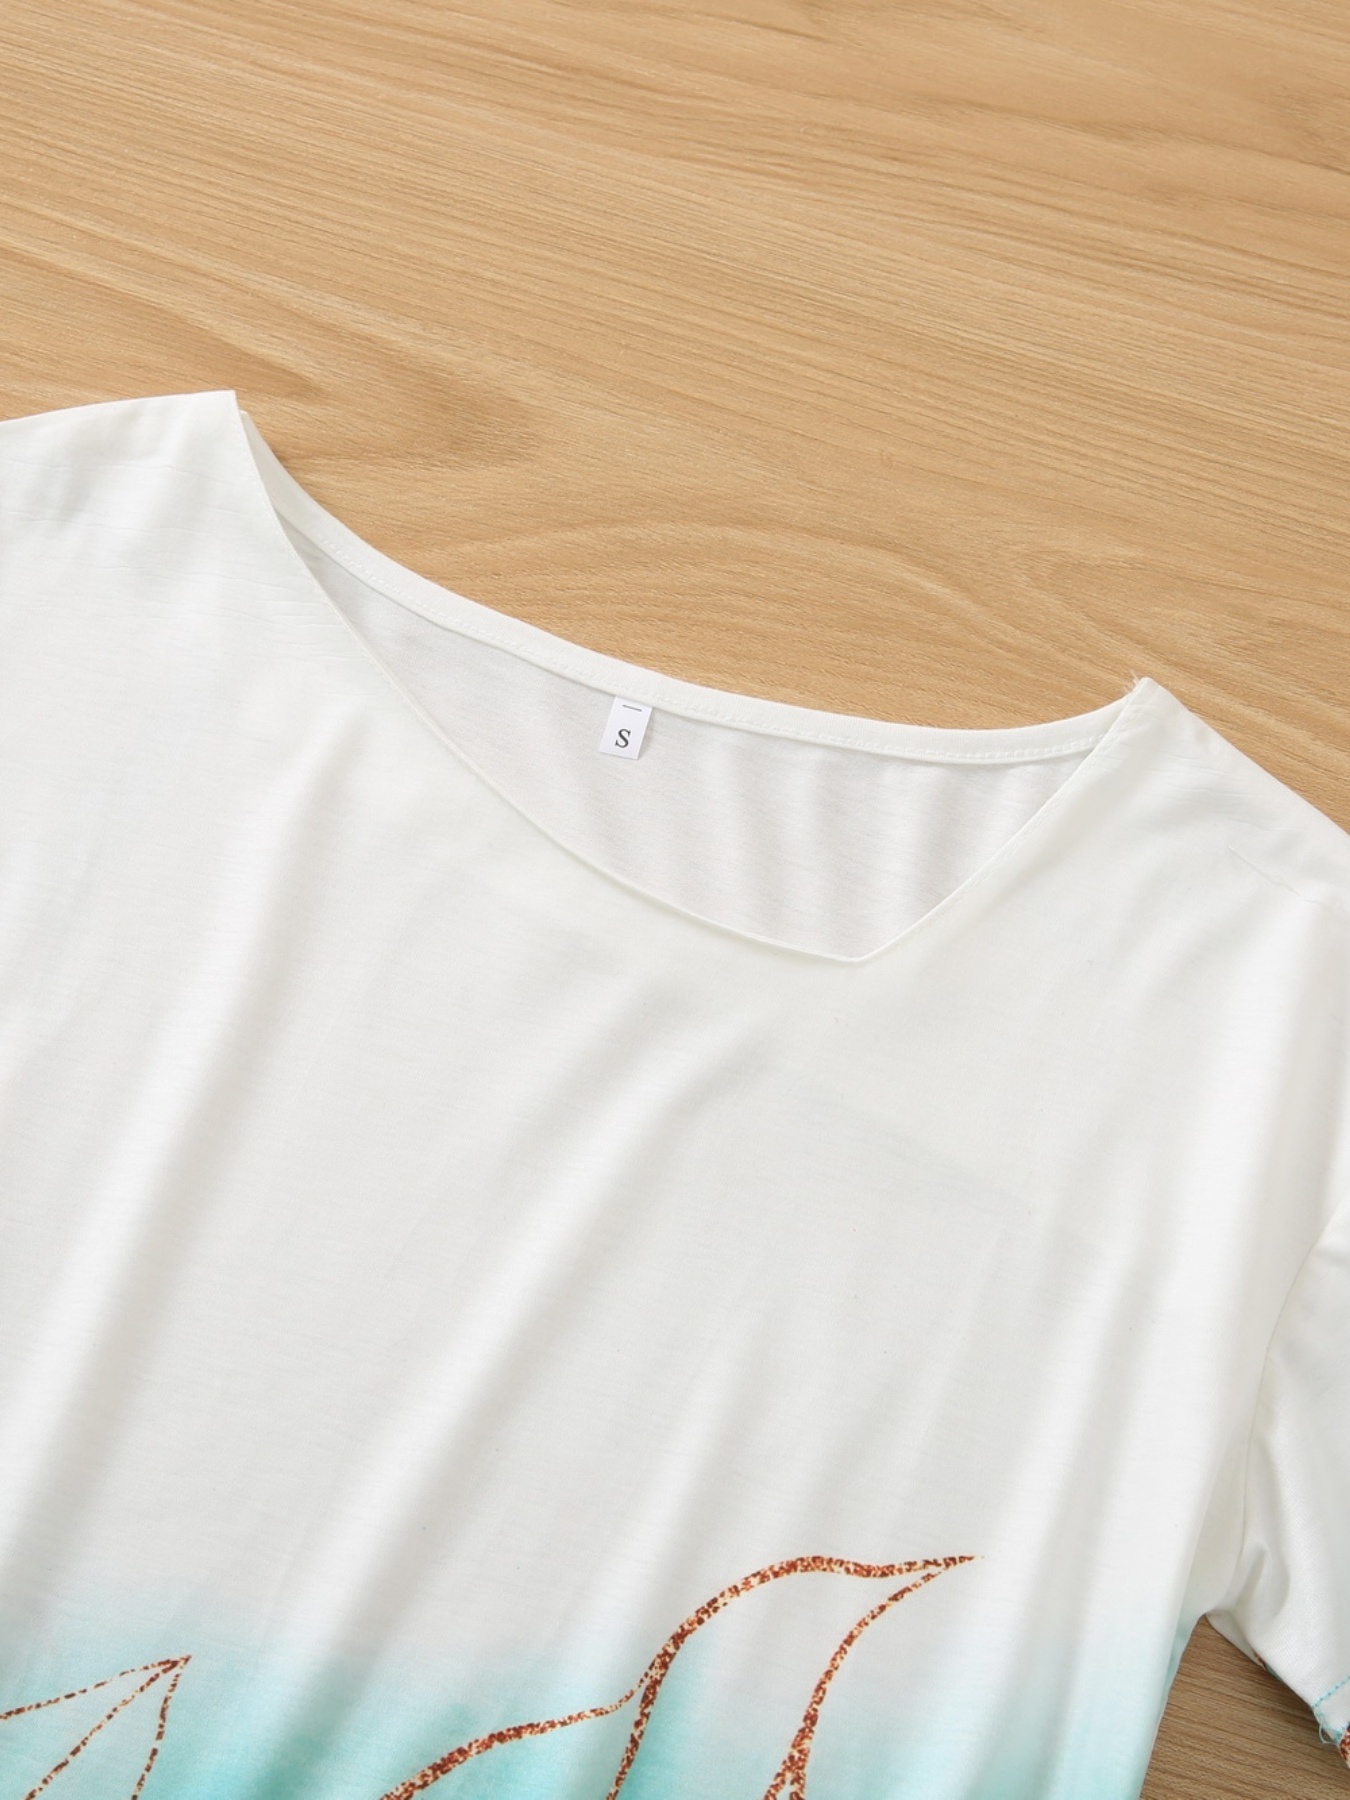 Best Deal for Women Casual Gradient Print T Shirt Short Sleeve Shirt